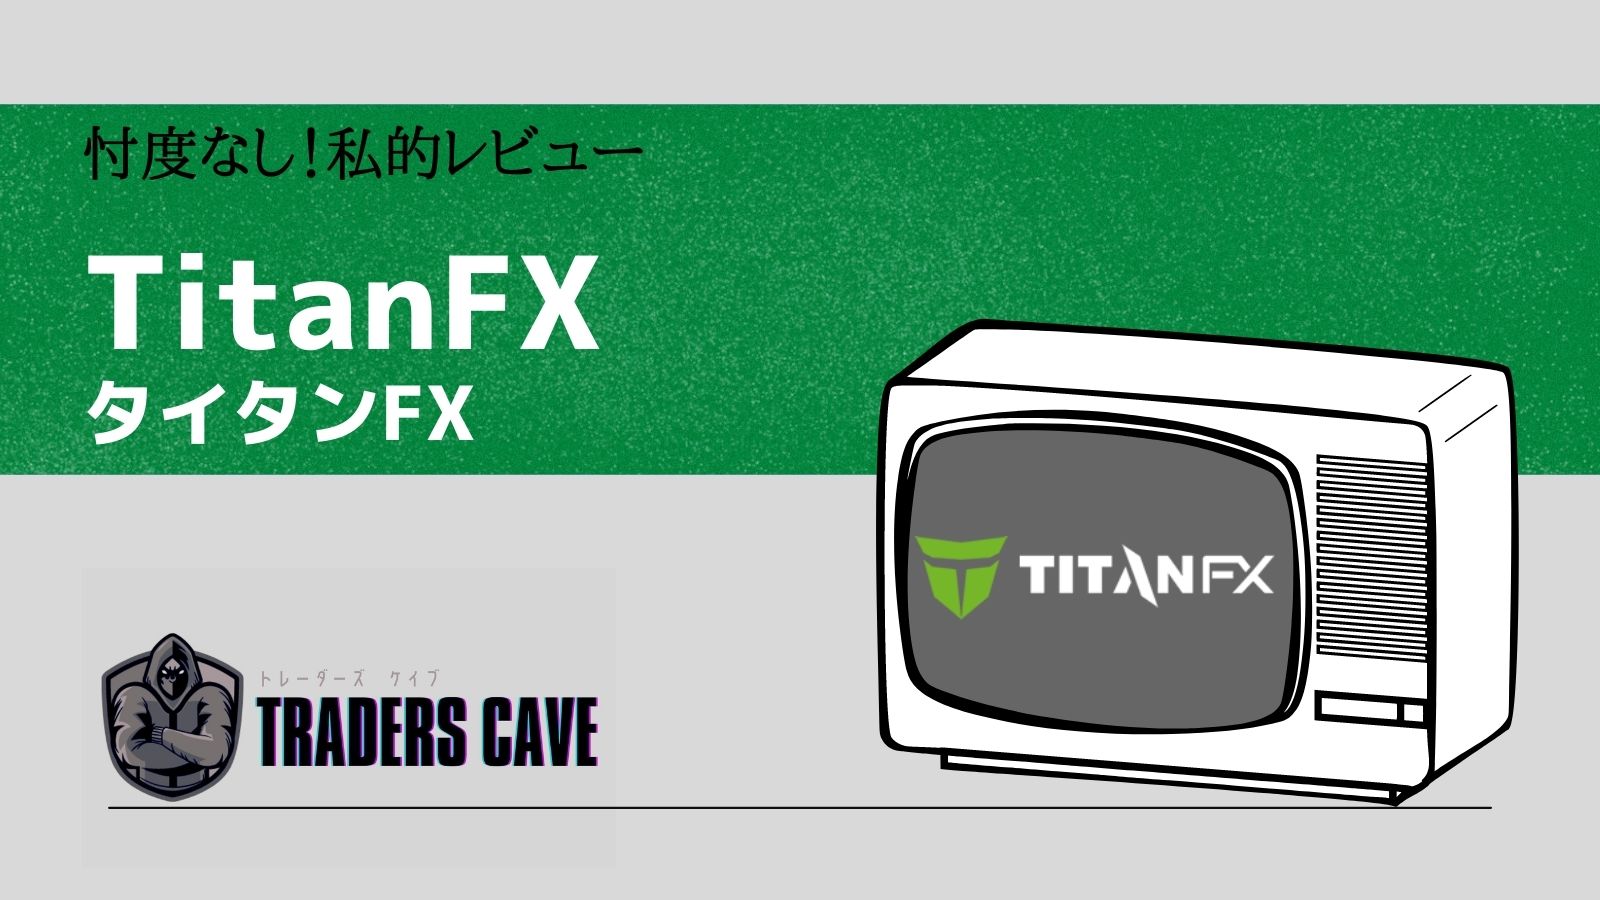 titanfx-review-title